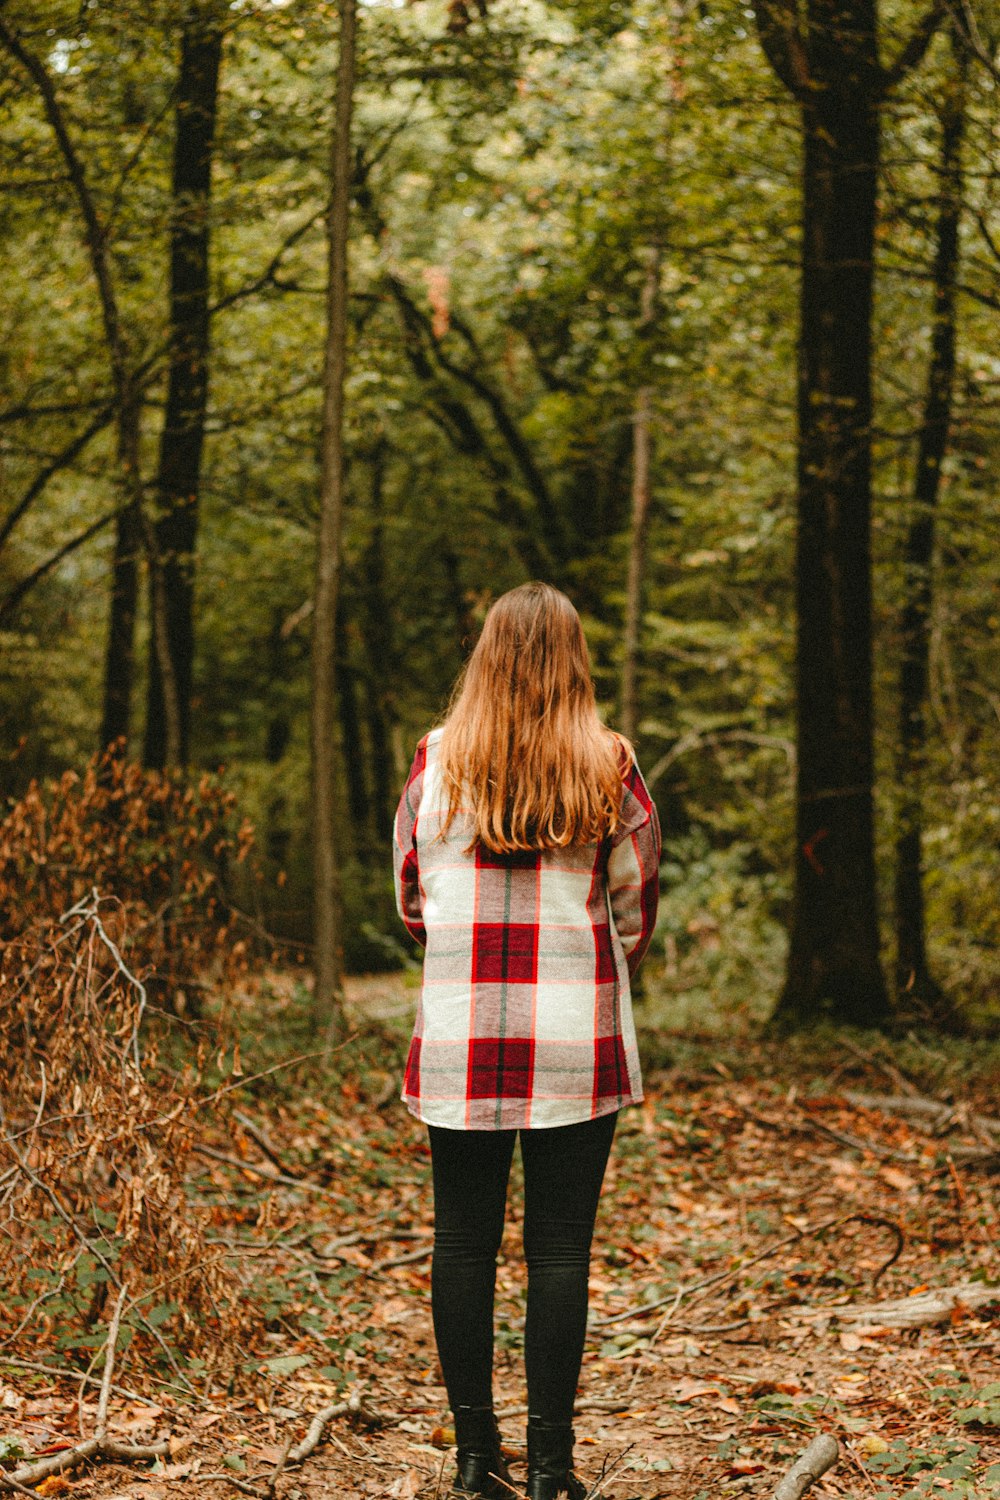 Ragazza in camicia a quadri rossa e bianca in piedi su foglie secche  marroni durante il giorno foto – Abbigliamento Immagine gratuita su Unsplash